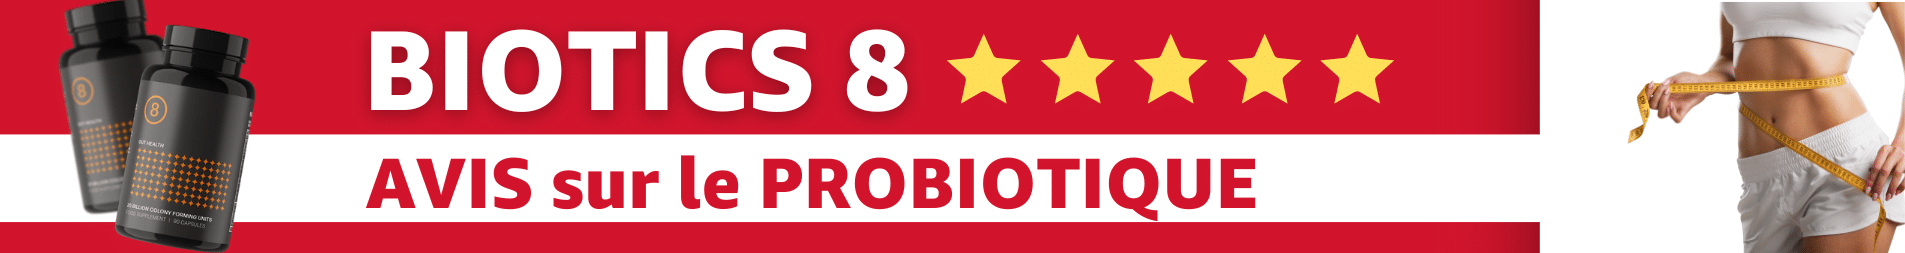 avis probiotique biotics 8